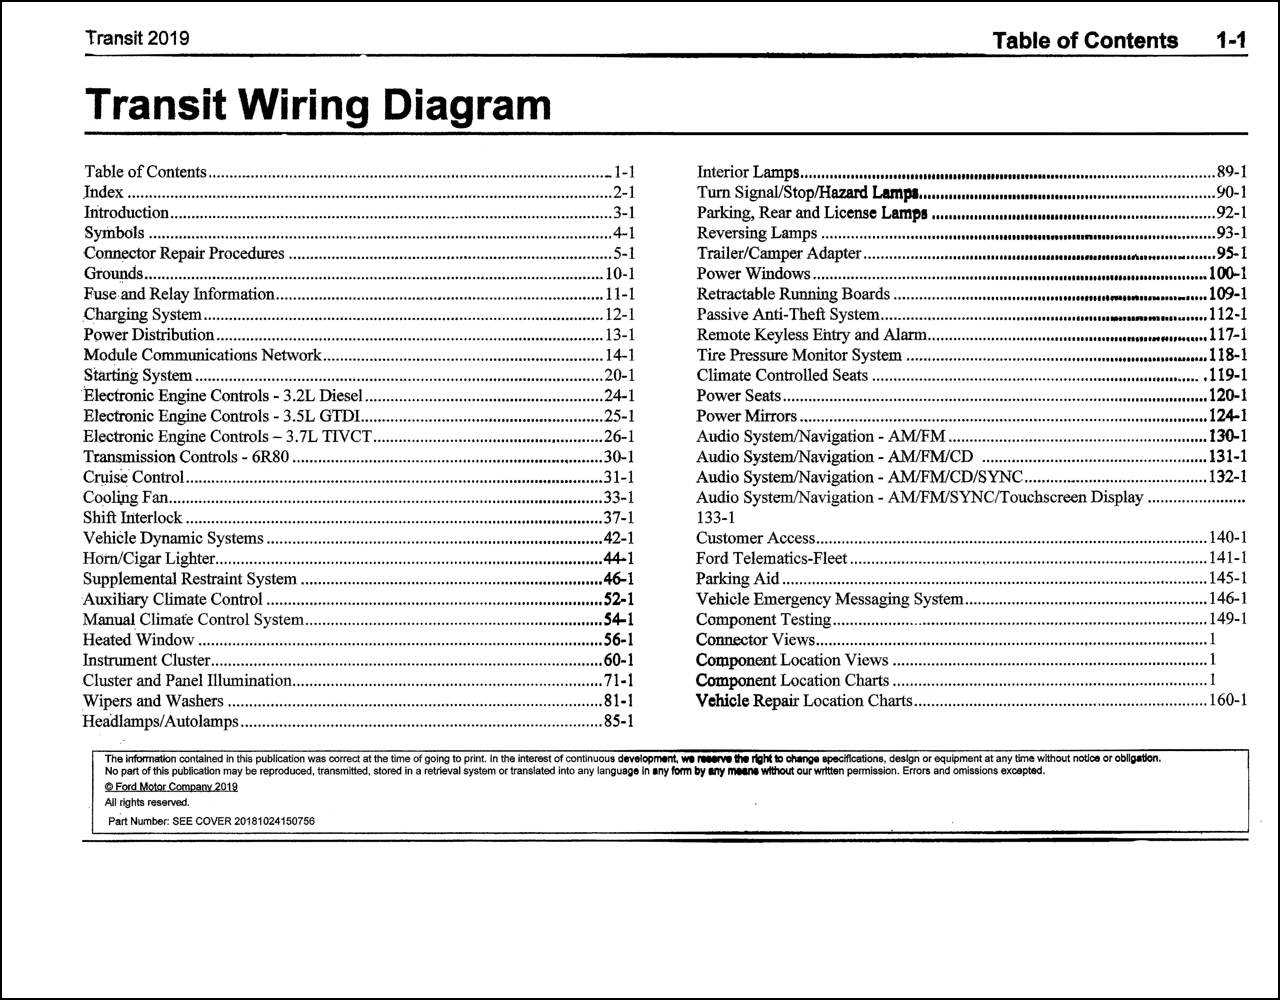 2019 Ford Transit Wiring Diagram Manual Original